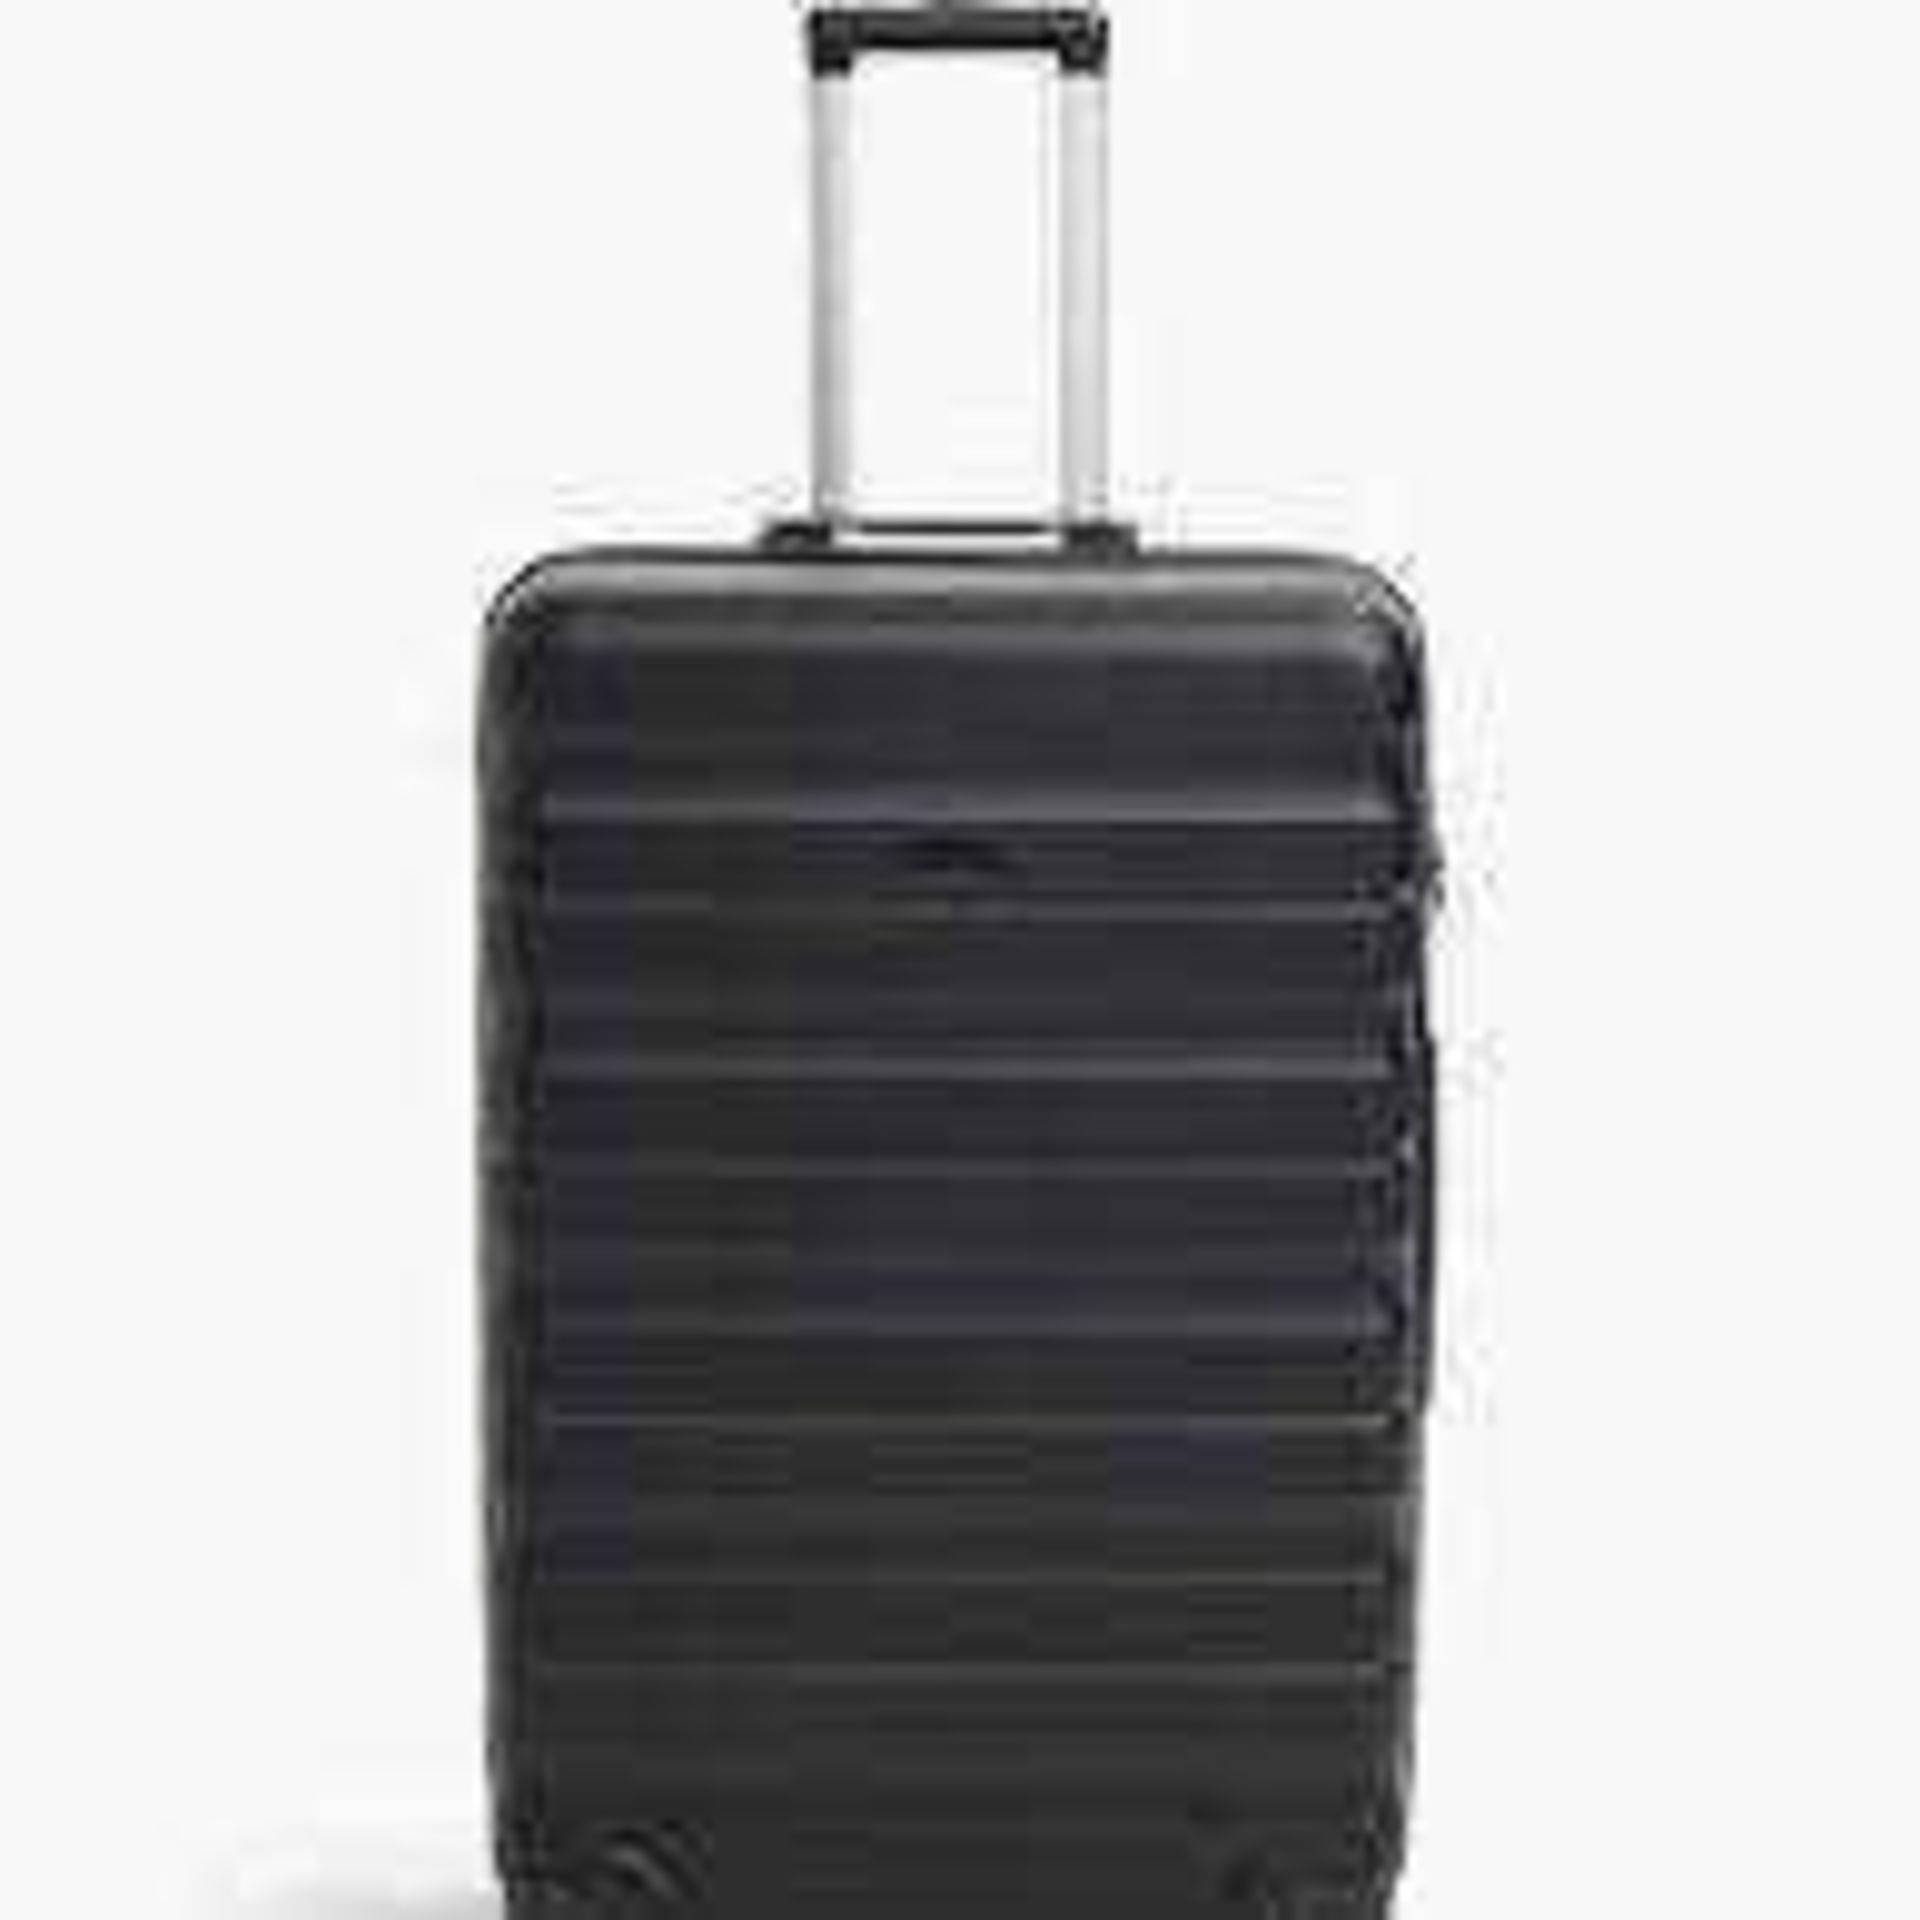 RRP £100 Unboxed John Lewis Black Hardshell Travel Suitcase - Image 2 of 4